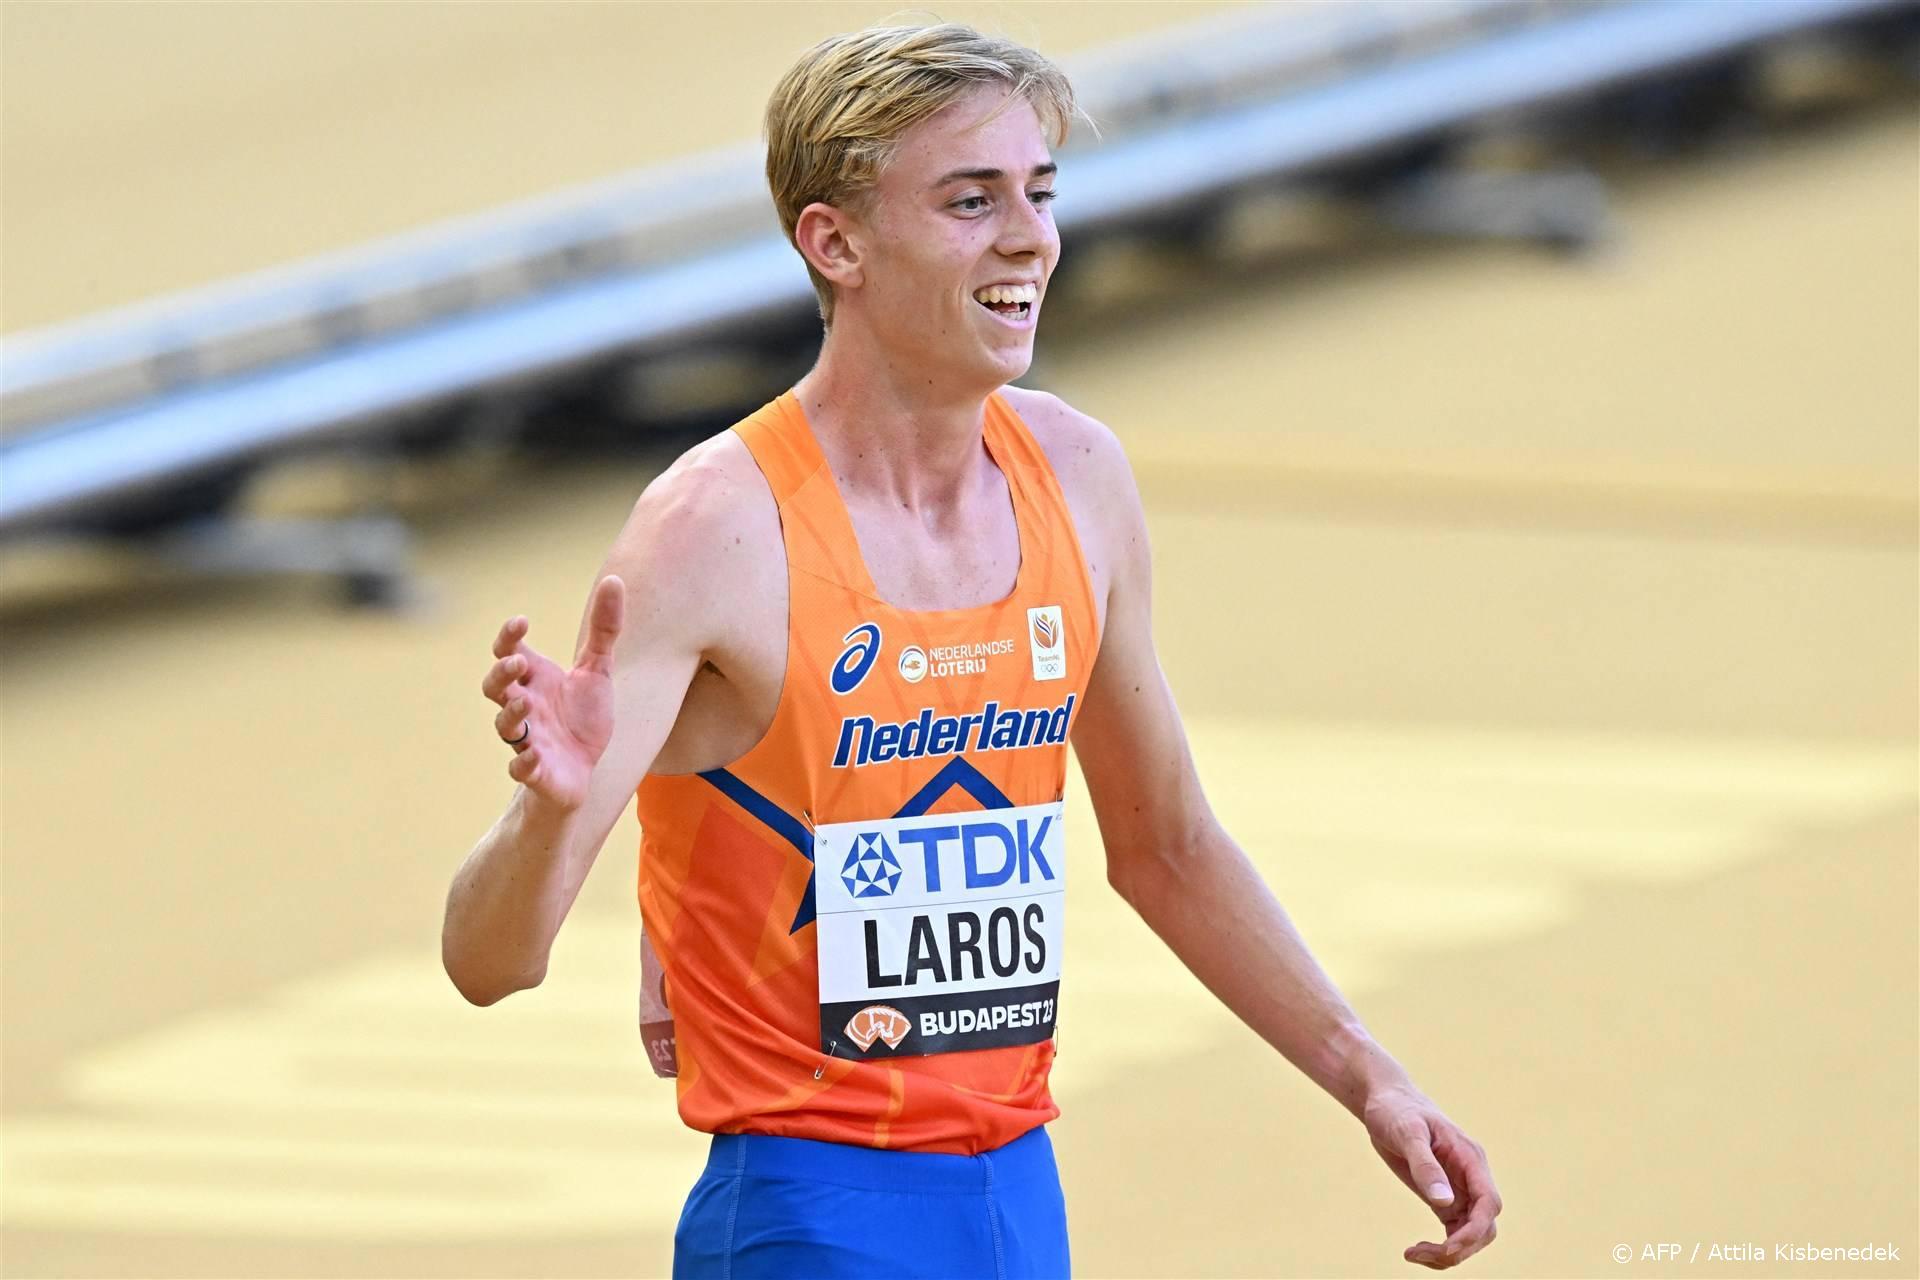 Laros verrast met Nederlands record op WK atletiek Boedapest